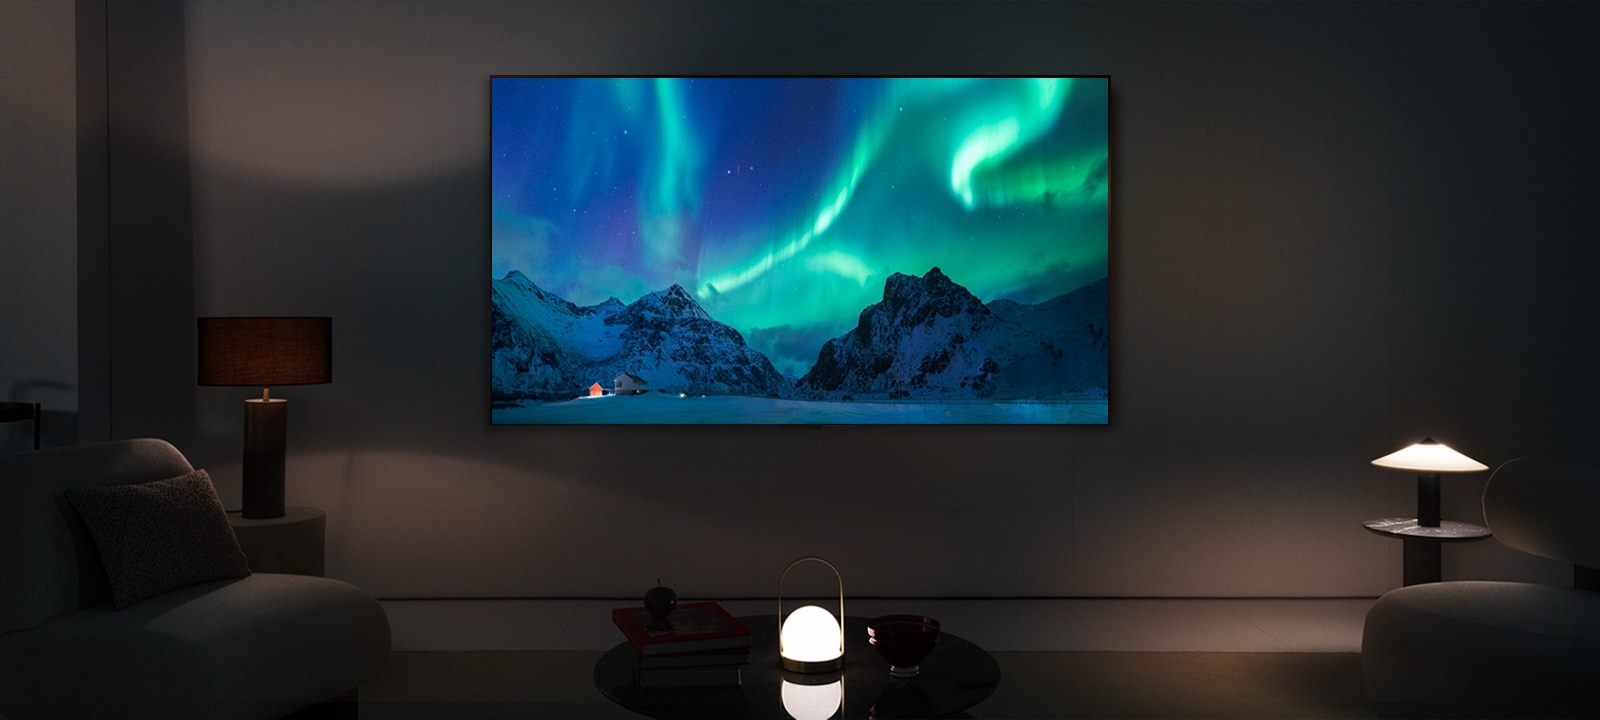 夜里现代化客厅里的 LG OLED TV。屏幕以绝佳的亮度显示北极光图像。